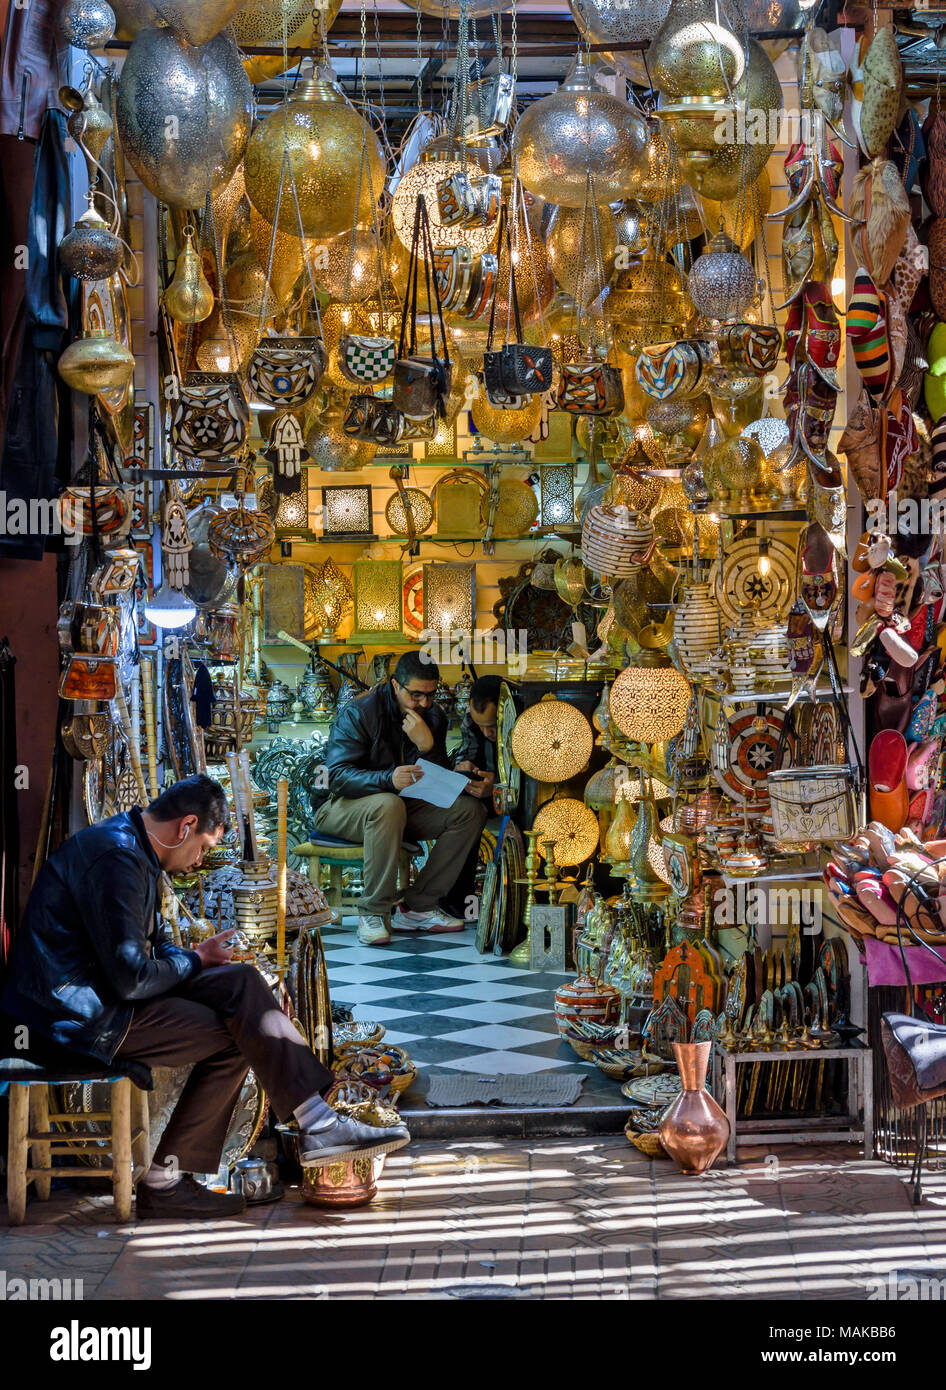 Il Marocco Marrakech Jemaa el Fna MEDINA SOUK luci in ottone intarsiato globi teiere in vendita Foto Stock